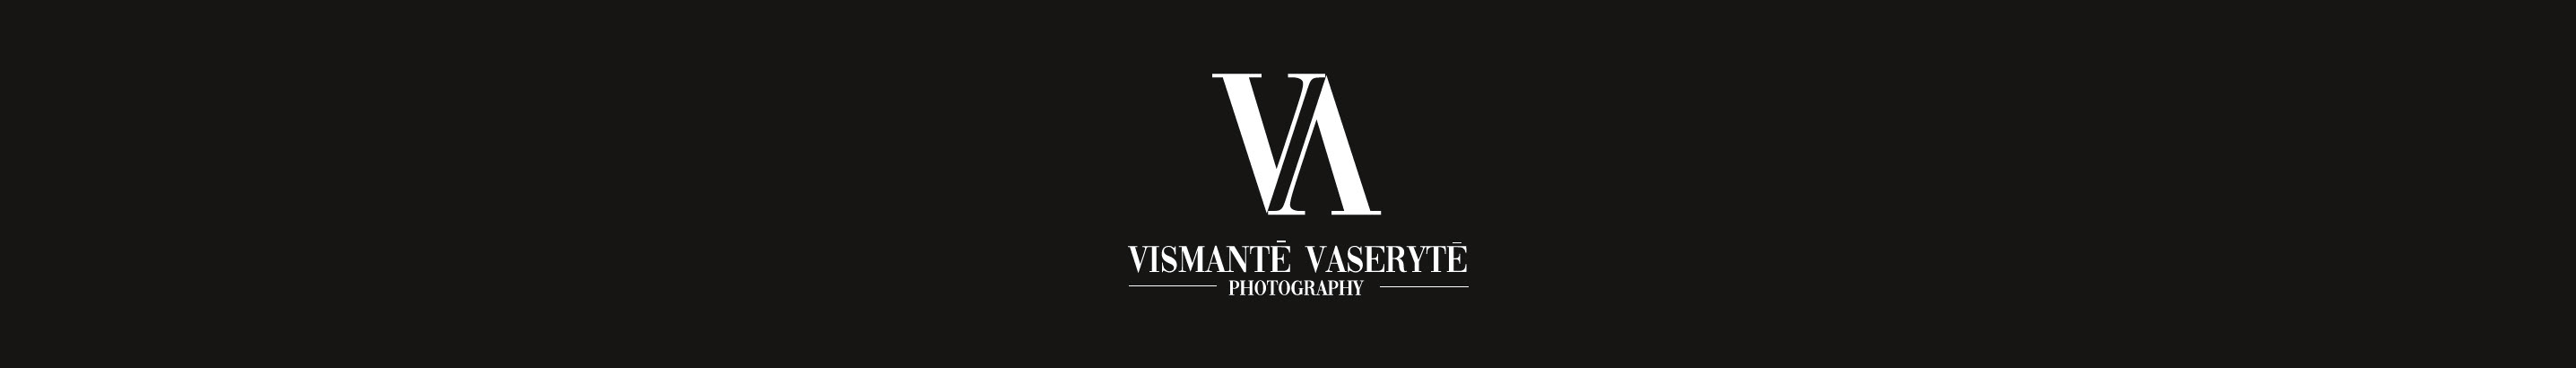 Vismante Vaseryte's profile banner